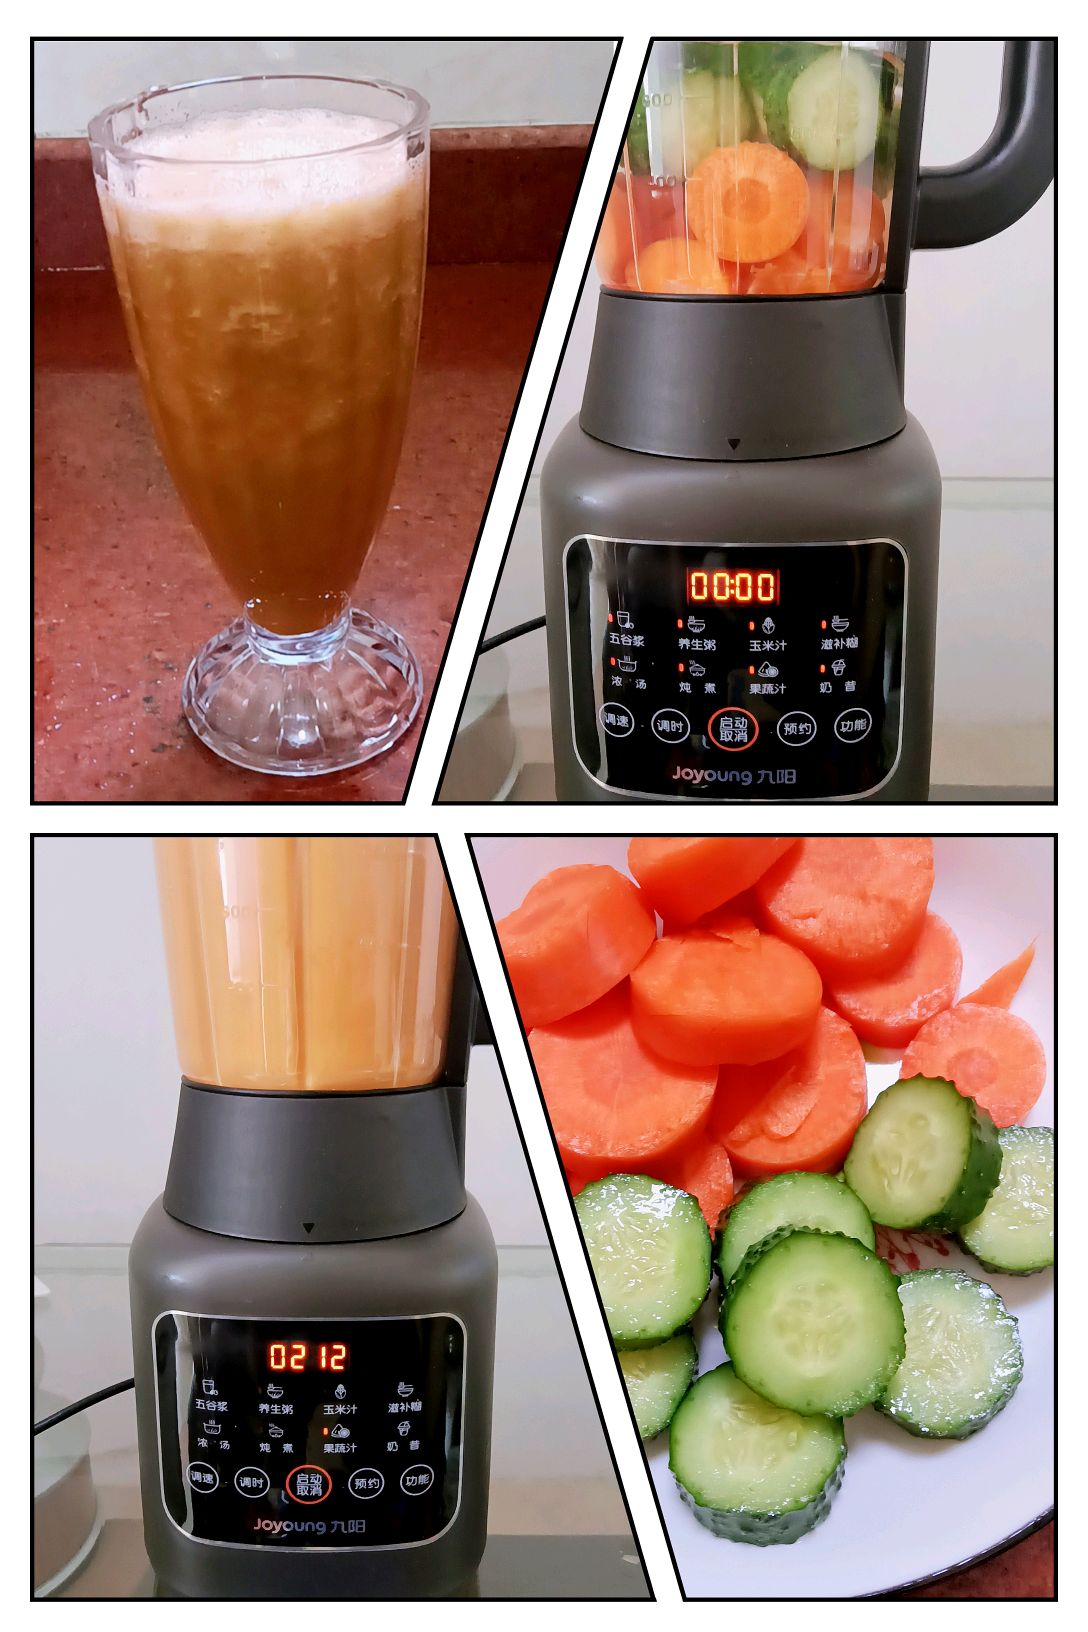 胡萝卜汁配方|用搅拌机和榨汁机榨汁胡萝卜 - 必威高尔夫球